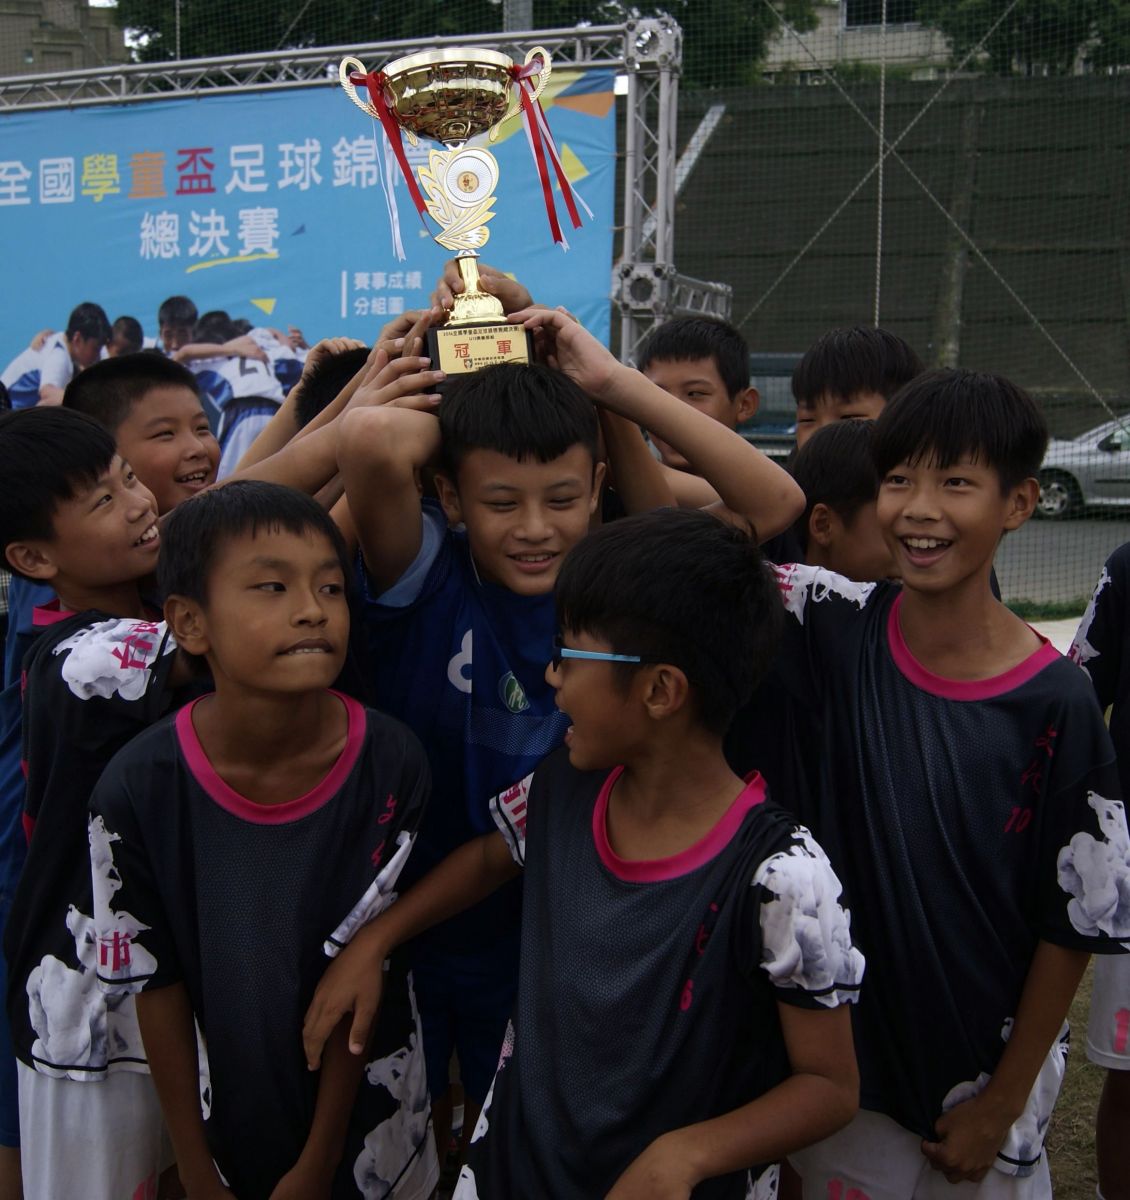 台南文化暌違10年再舉起全國冠軍。